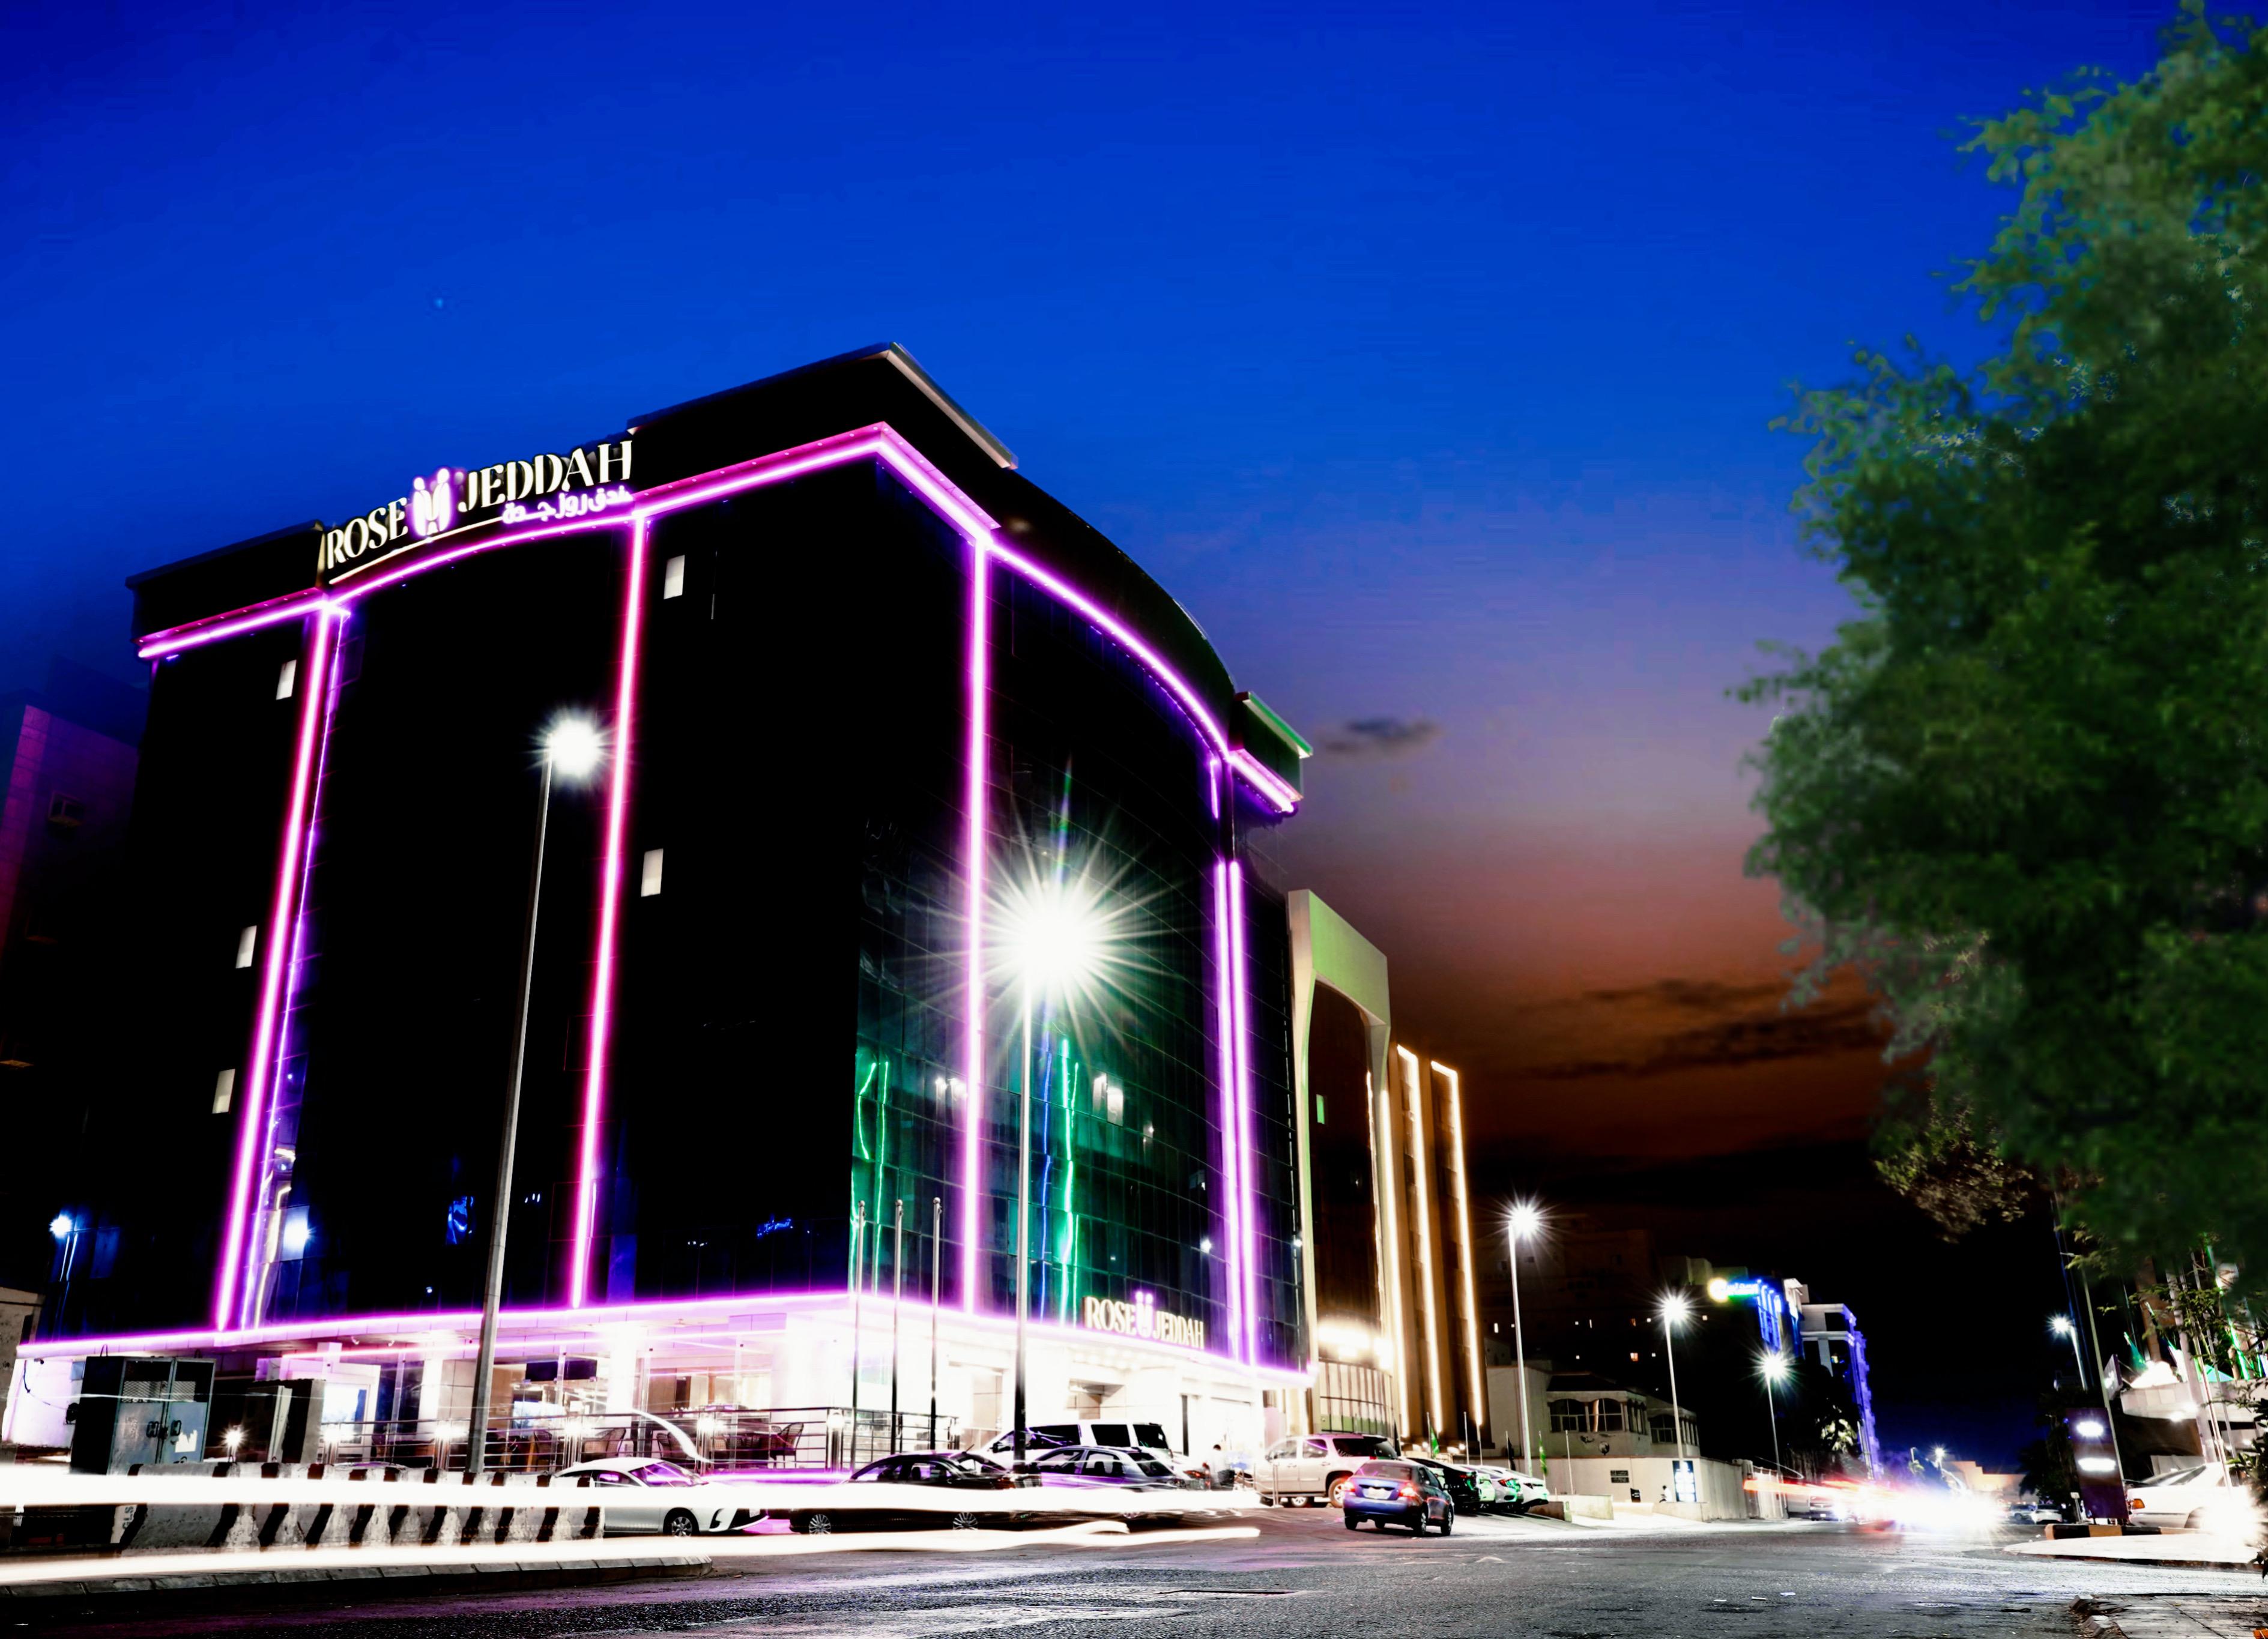 Rose Jeddah Hotel - Others